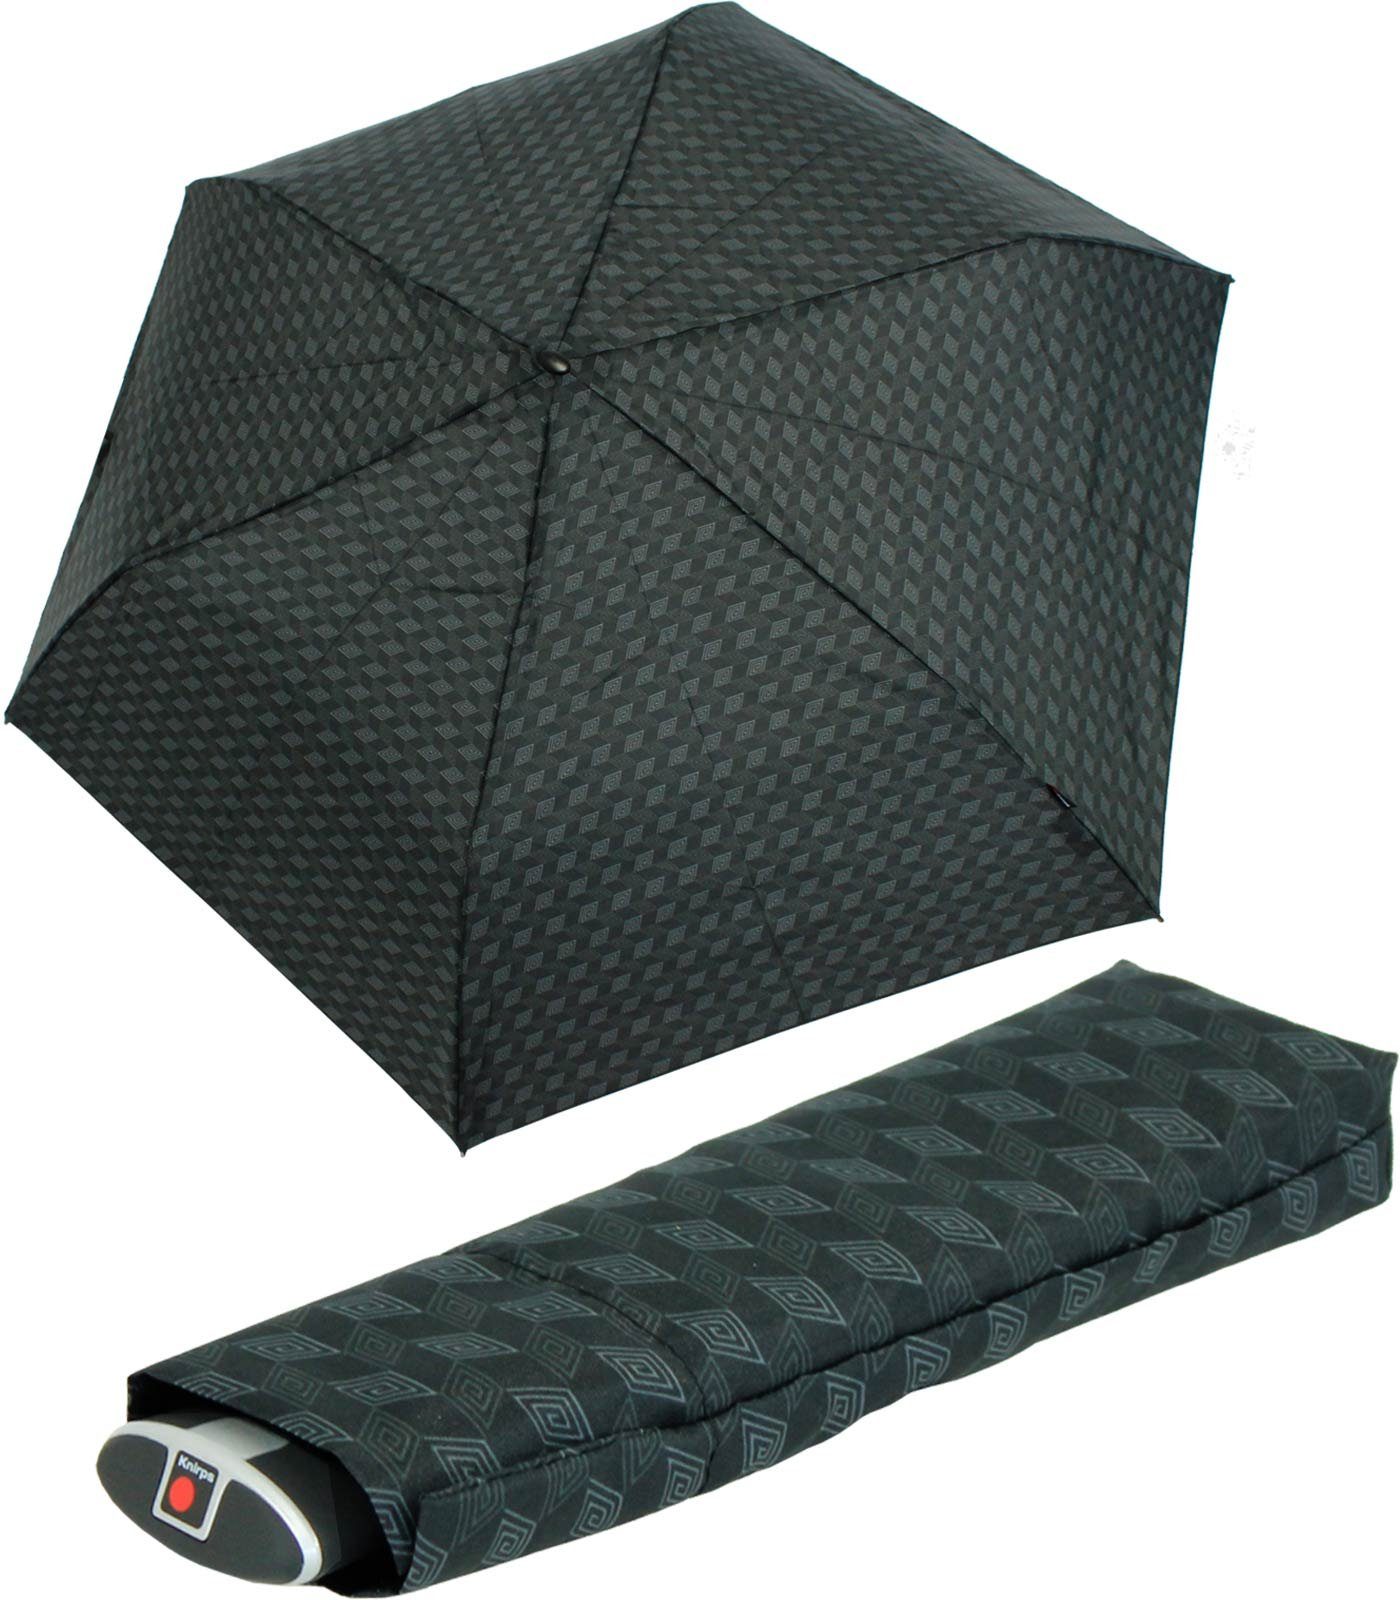 Tasche, Notfall ein für flacher, Schirm, für Knirps® Begleiter, jeden jede stabiler treuer Taschenregenschirm passend